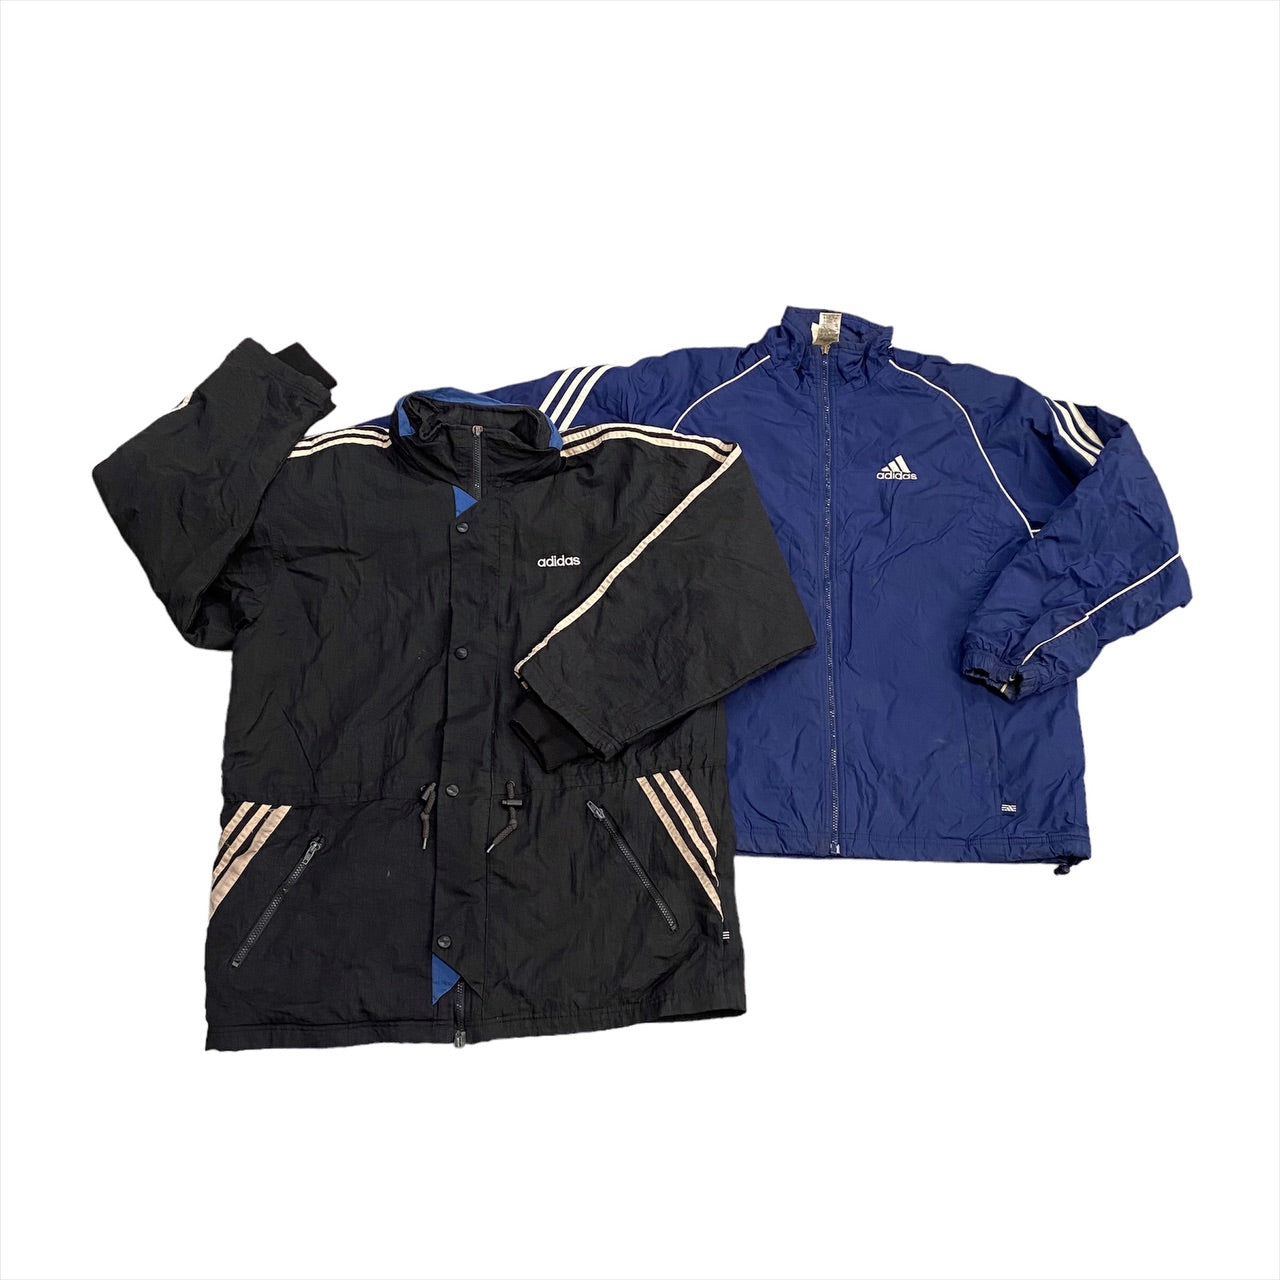 (EOTL) Adidas Branded Jacket Bundle - Grade B 15 pieces